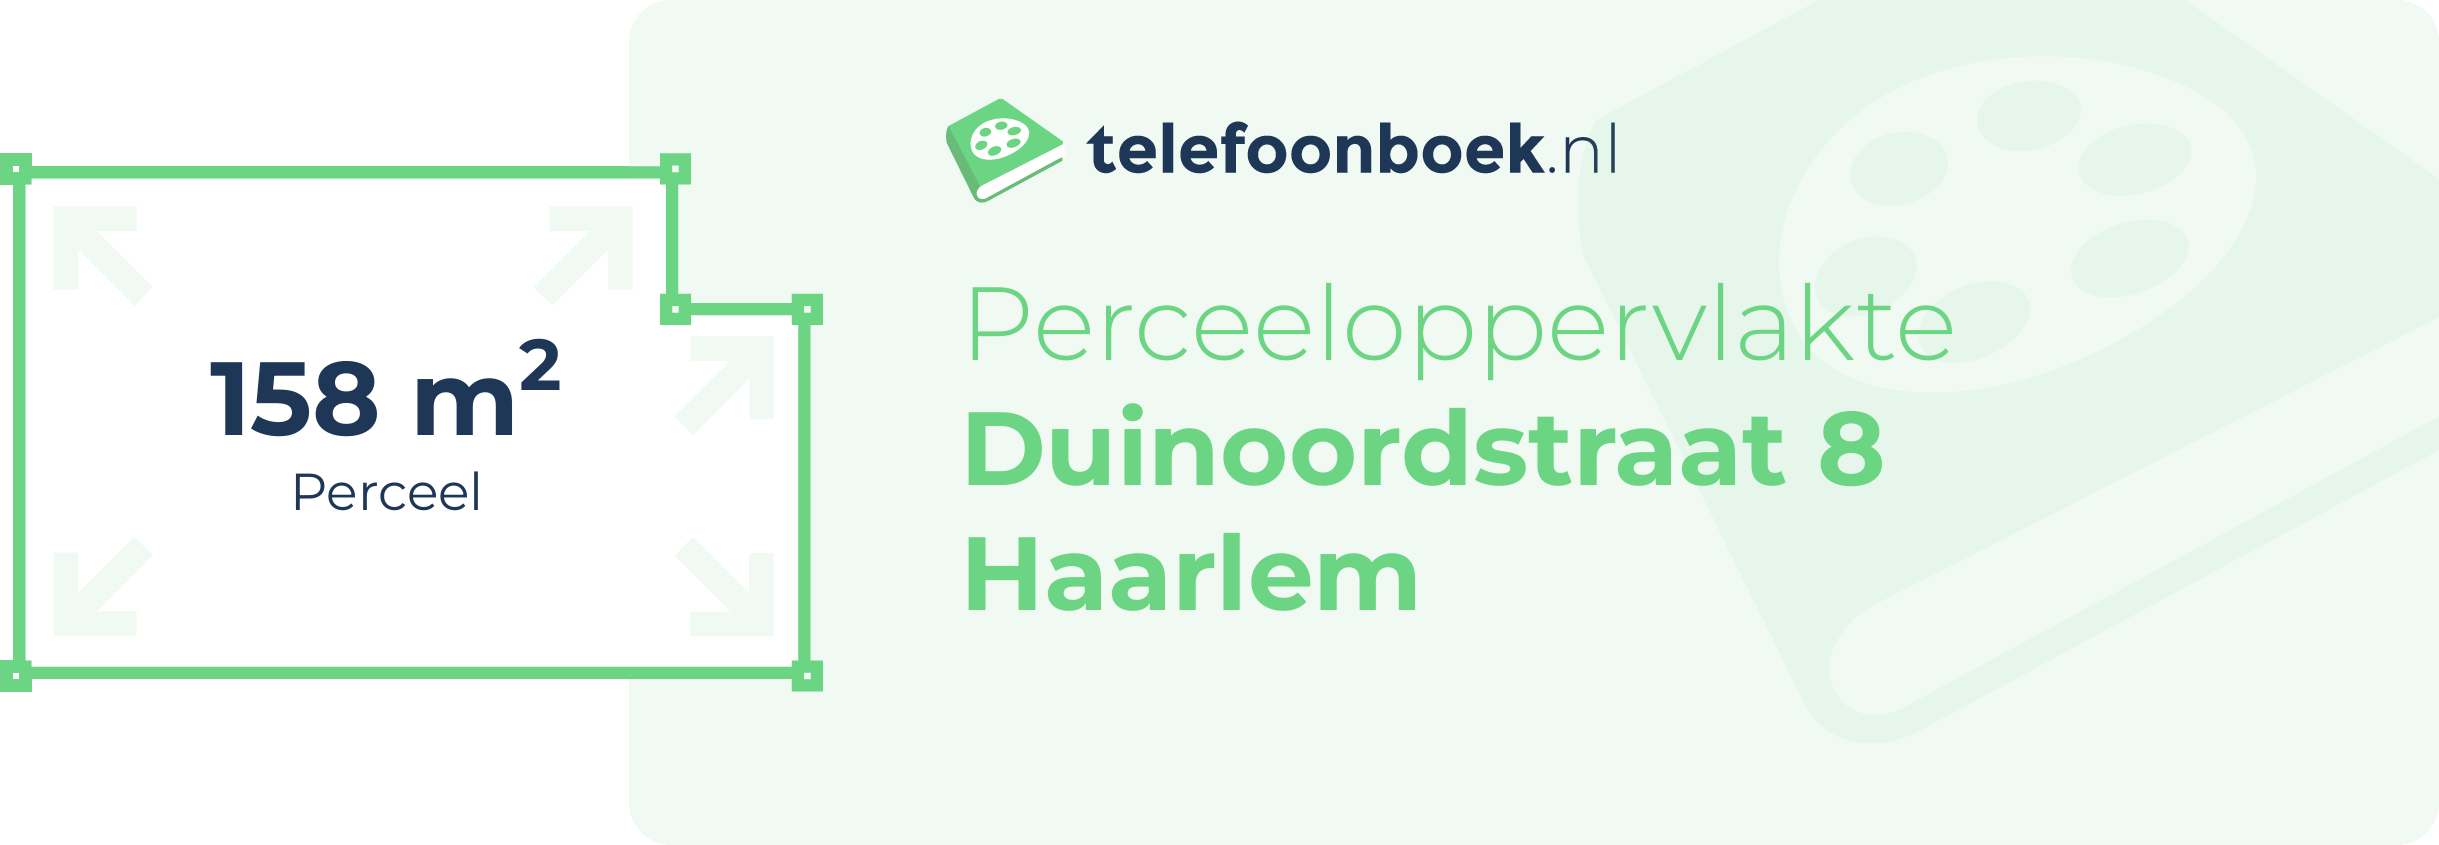 Perceeloppervlakte Duinoordstraat 8 Haarlem